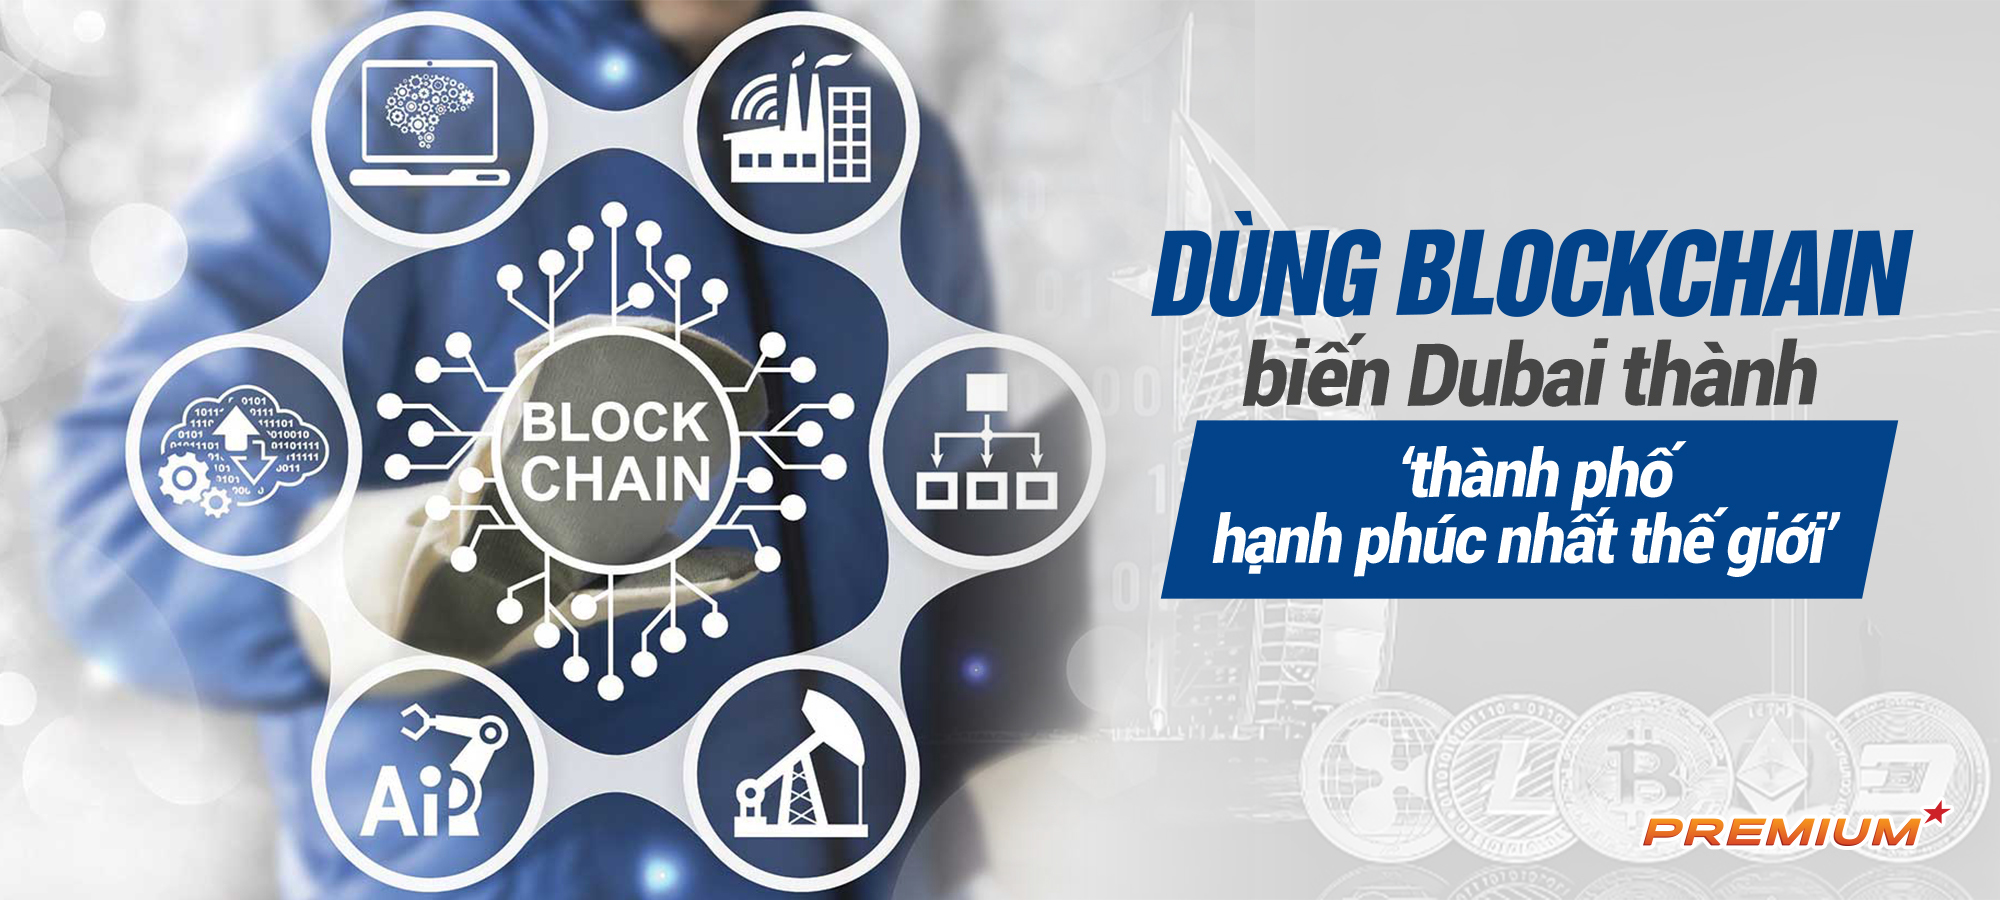 dung-blockchain-bien-dubai-thanh-thanh-pho-hanh-phuc-nhat-the-gioi-1-1656723560783-1656723560922431306375.jpg